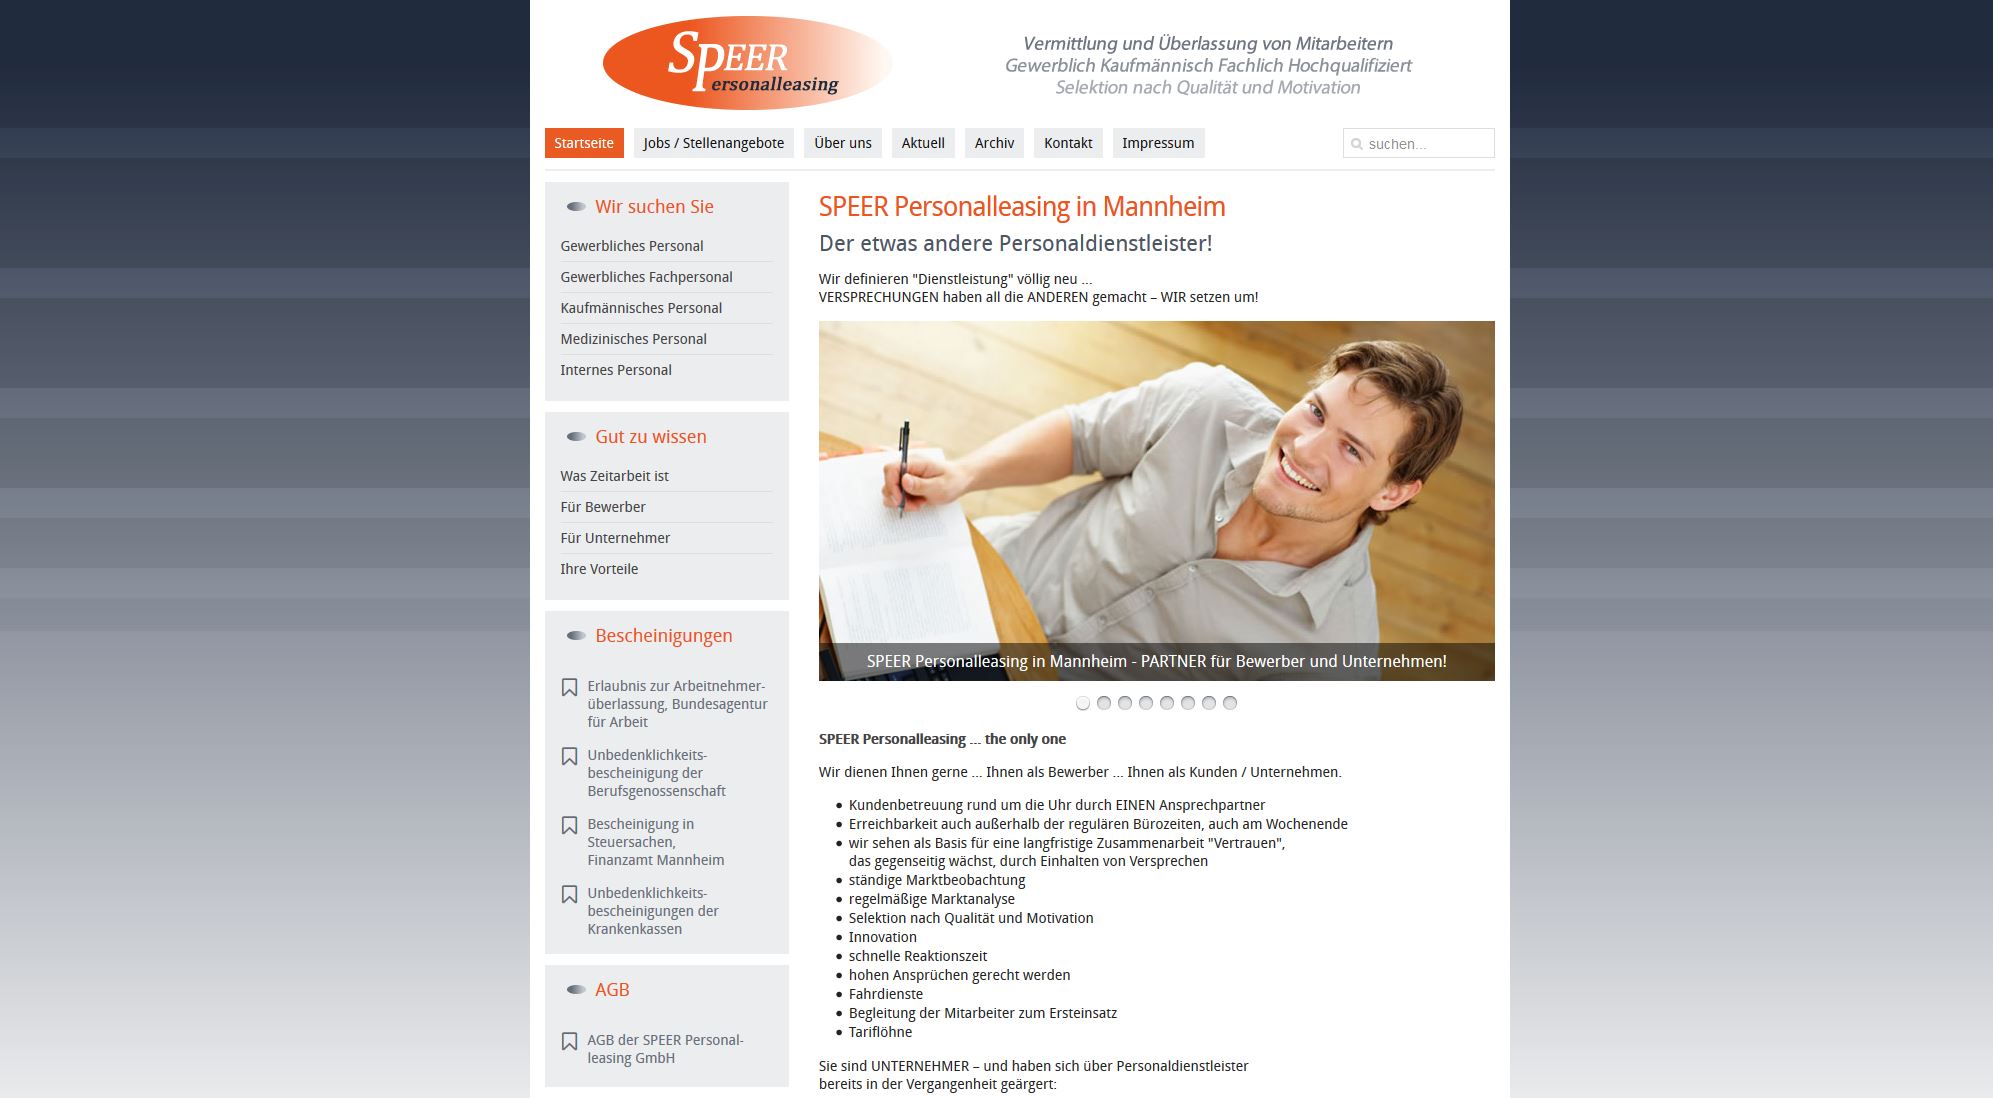 SPEER Personalleasing, der Jobvermittler in Mannheim